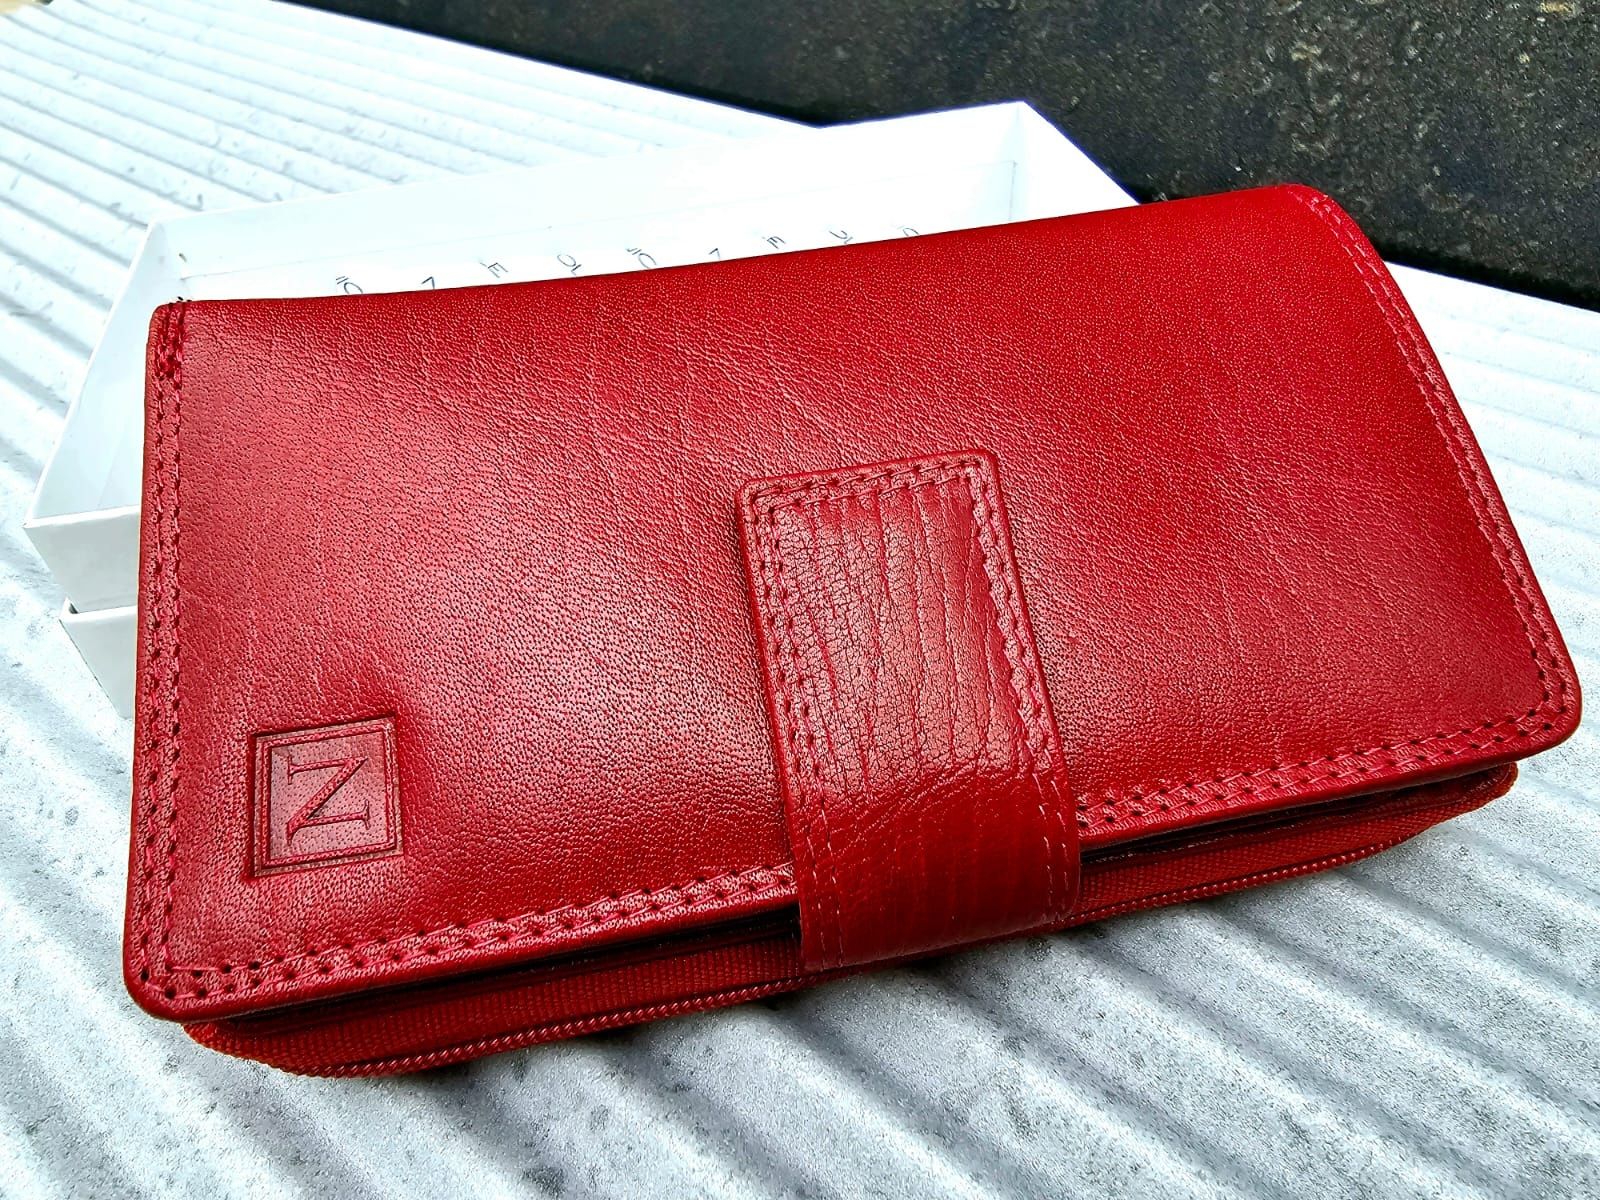 Nowy modny damski portfel marki Nicole czerwony